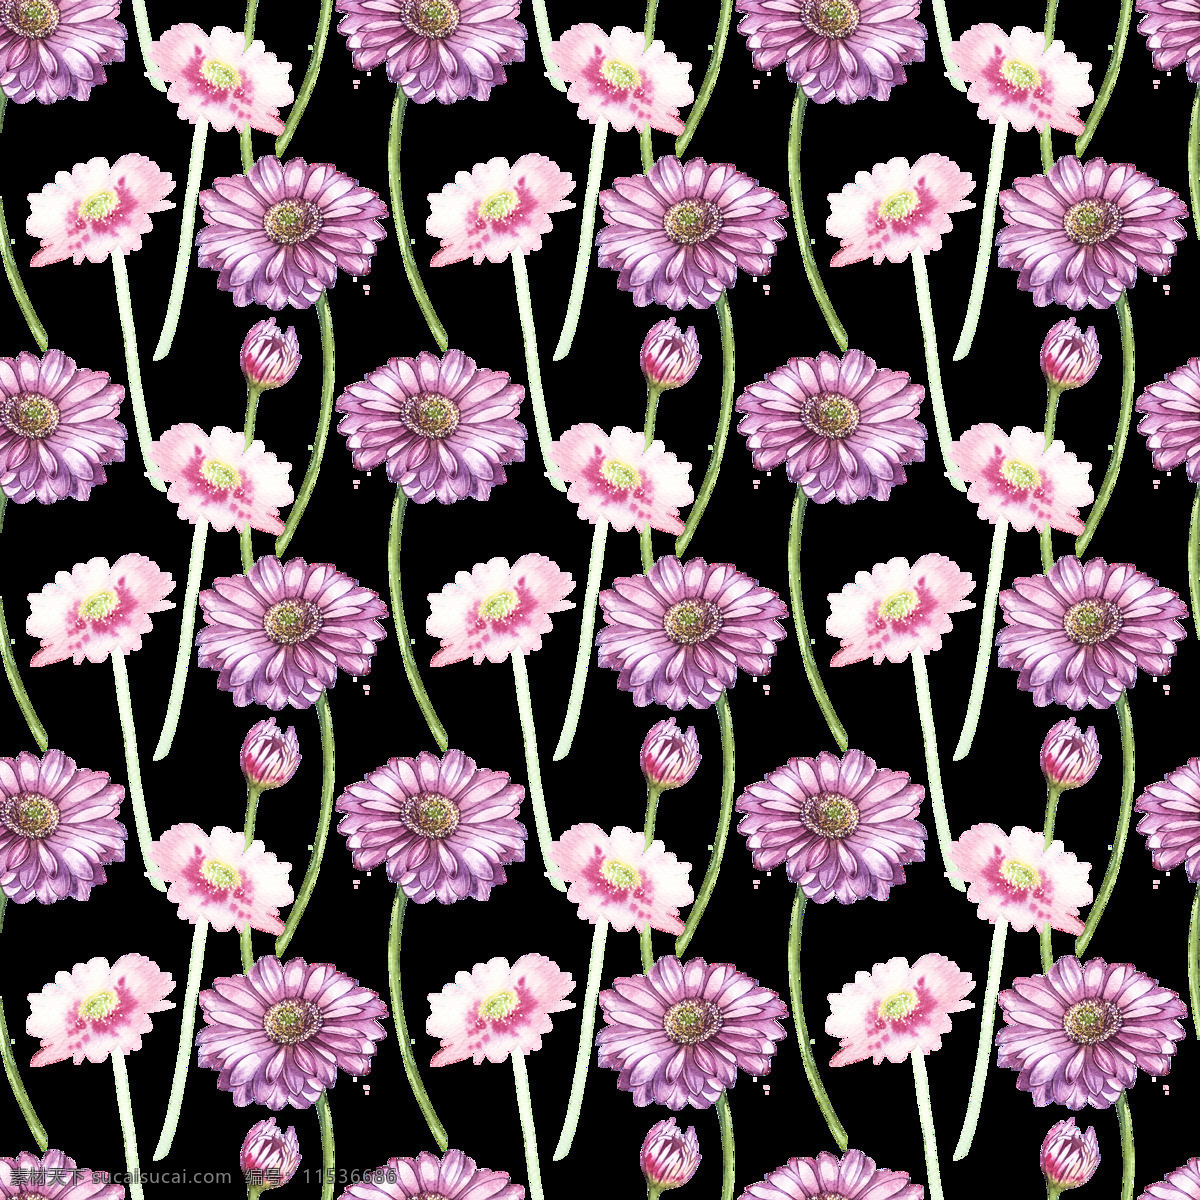 粉色 可爱 小雏 菊 透明 透明素材 装饰素材 植物 可爱风